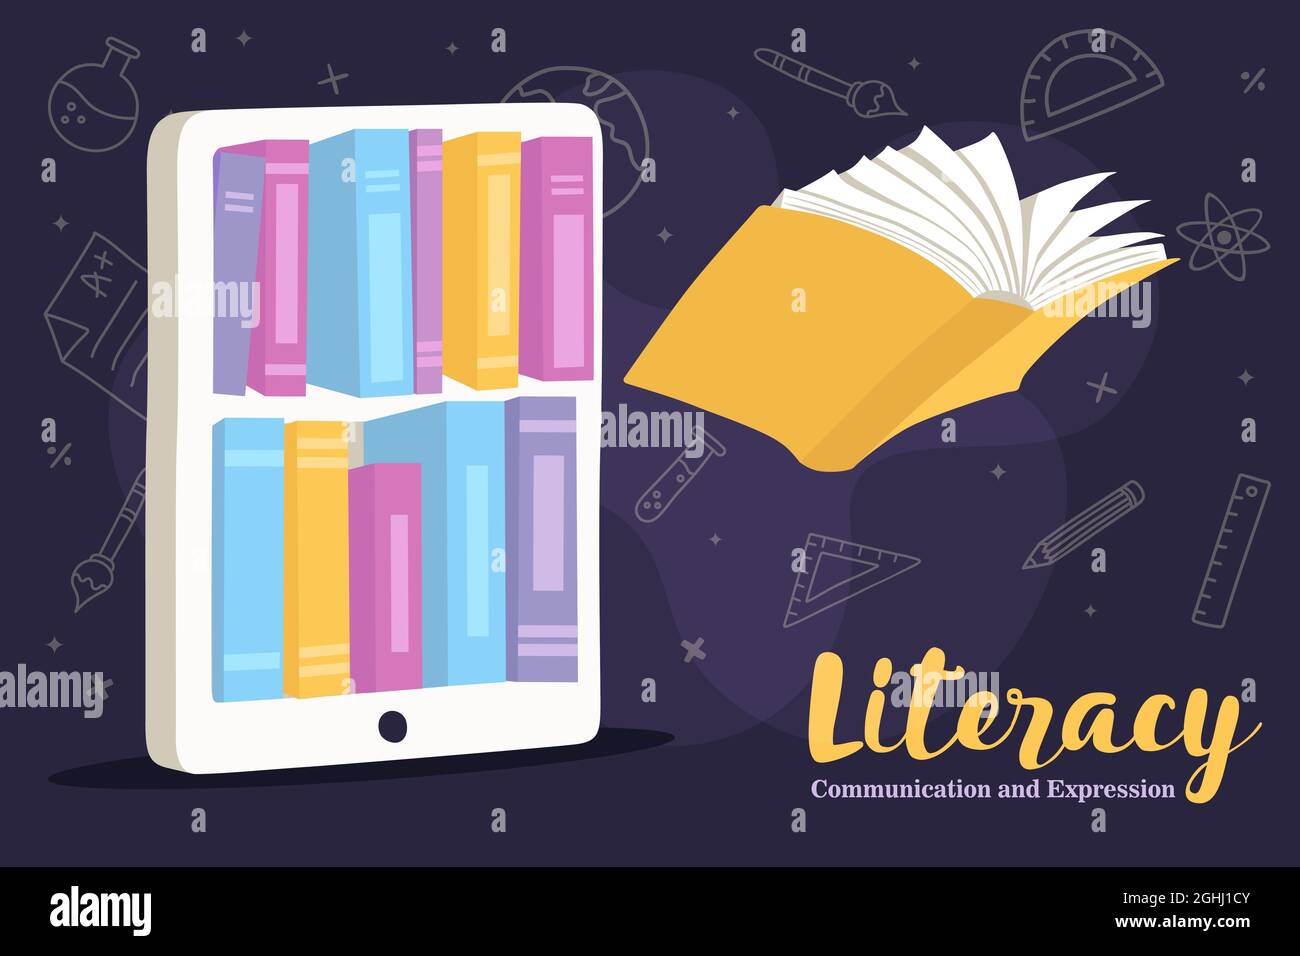 Alphabetisierung Grußkarte Illustration von bunten offenen Buch fliegen von der Handy-Bibliothek App in modernen flachen Cartoon-Stil. Online-Bildung oder E-Learning c Stock Vektor